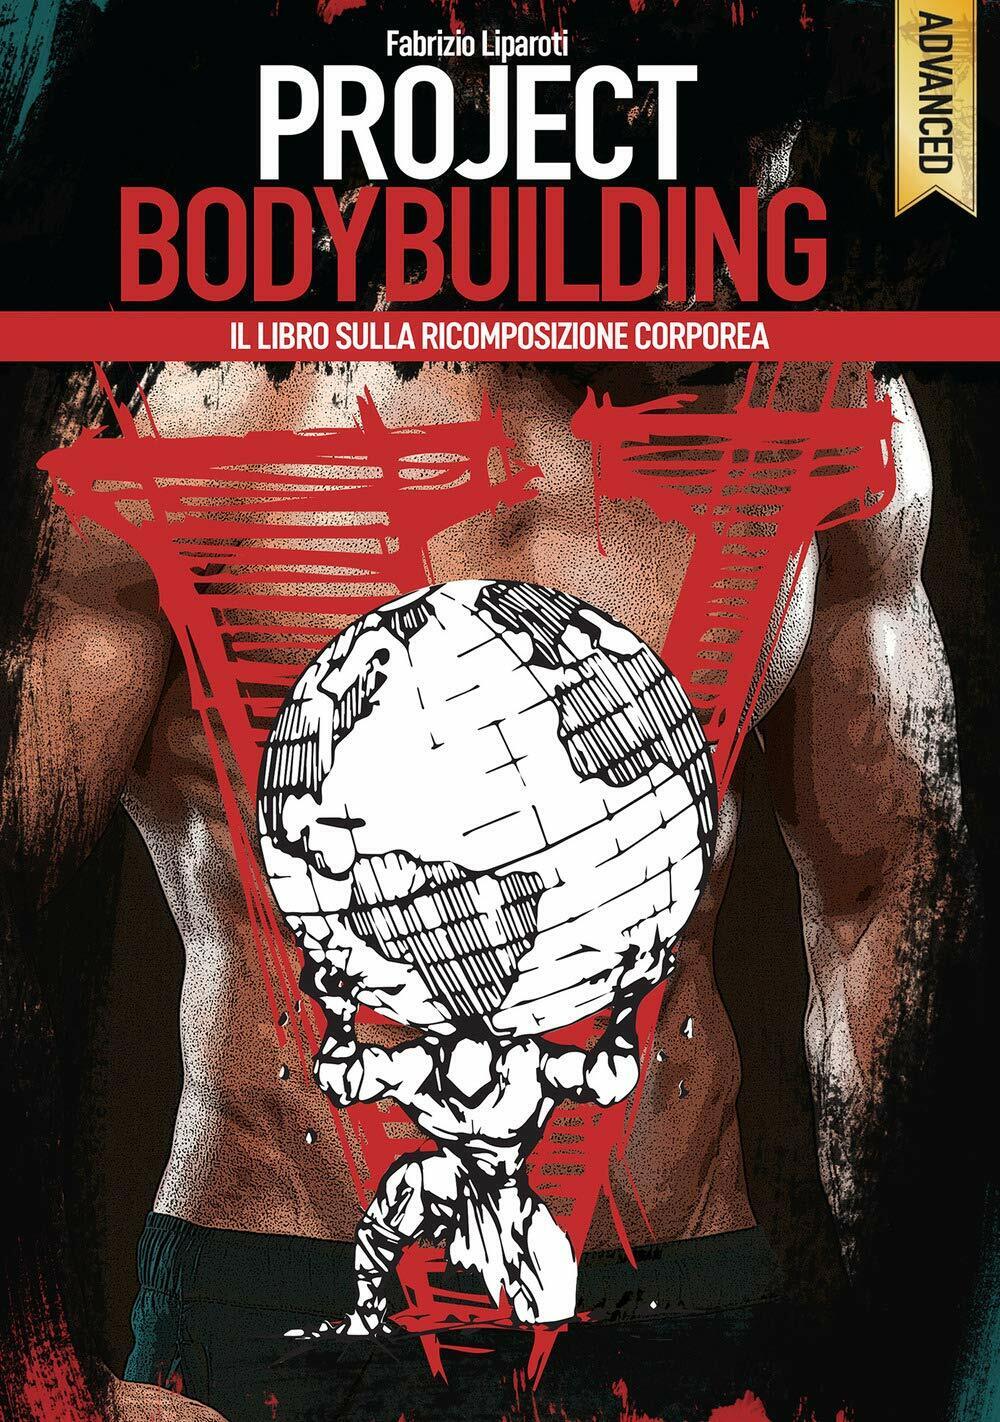 Project bodybuilding - Fabrizio Liparoti - Project Editions, 2019